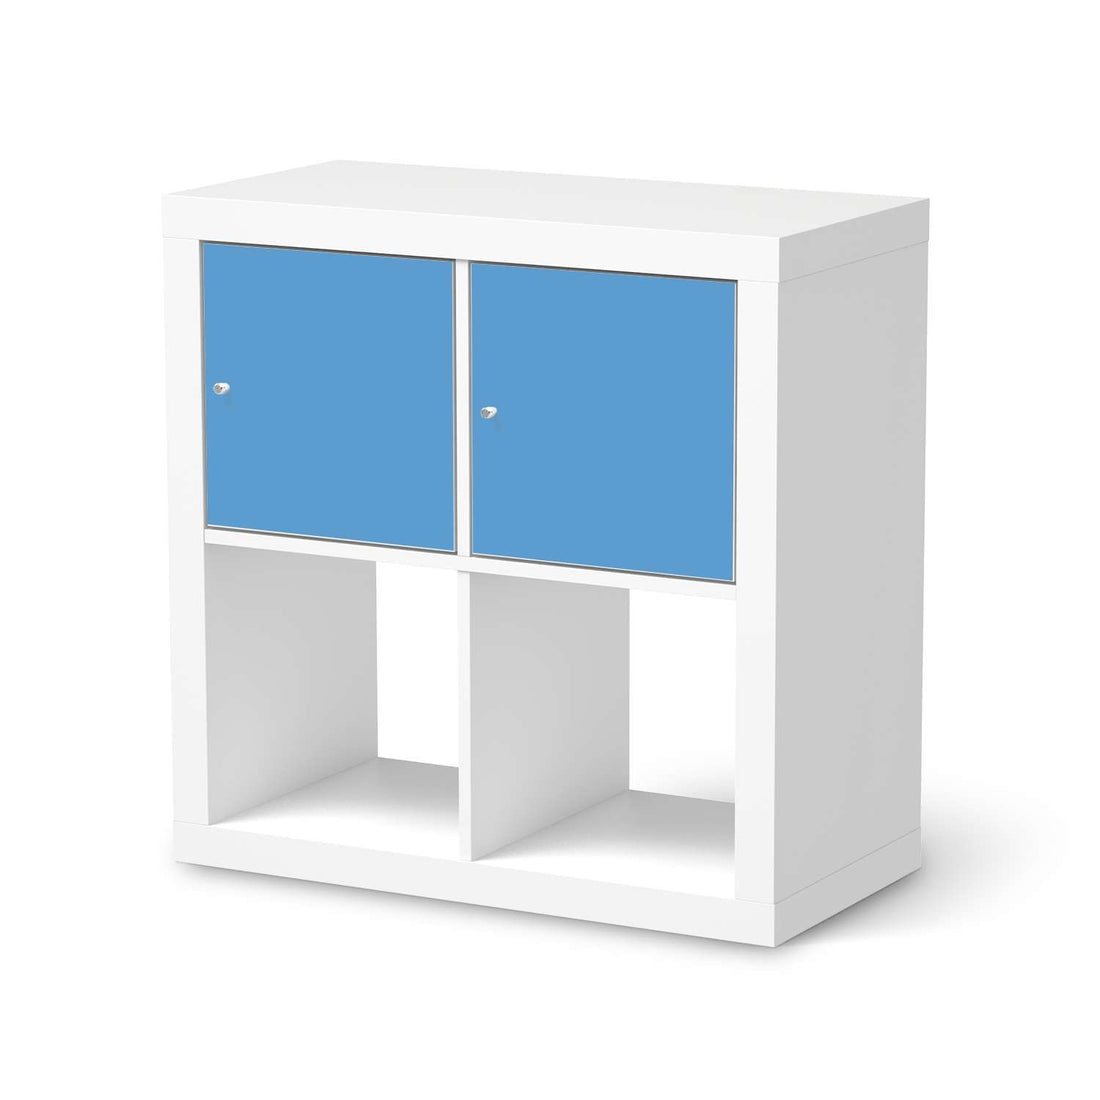 Möbelfolie Blau Light - IKEA Kallax Regal 2 Türen Quer  - weiss